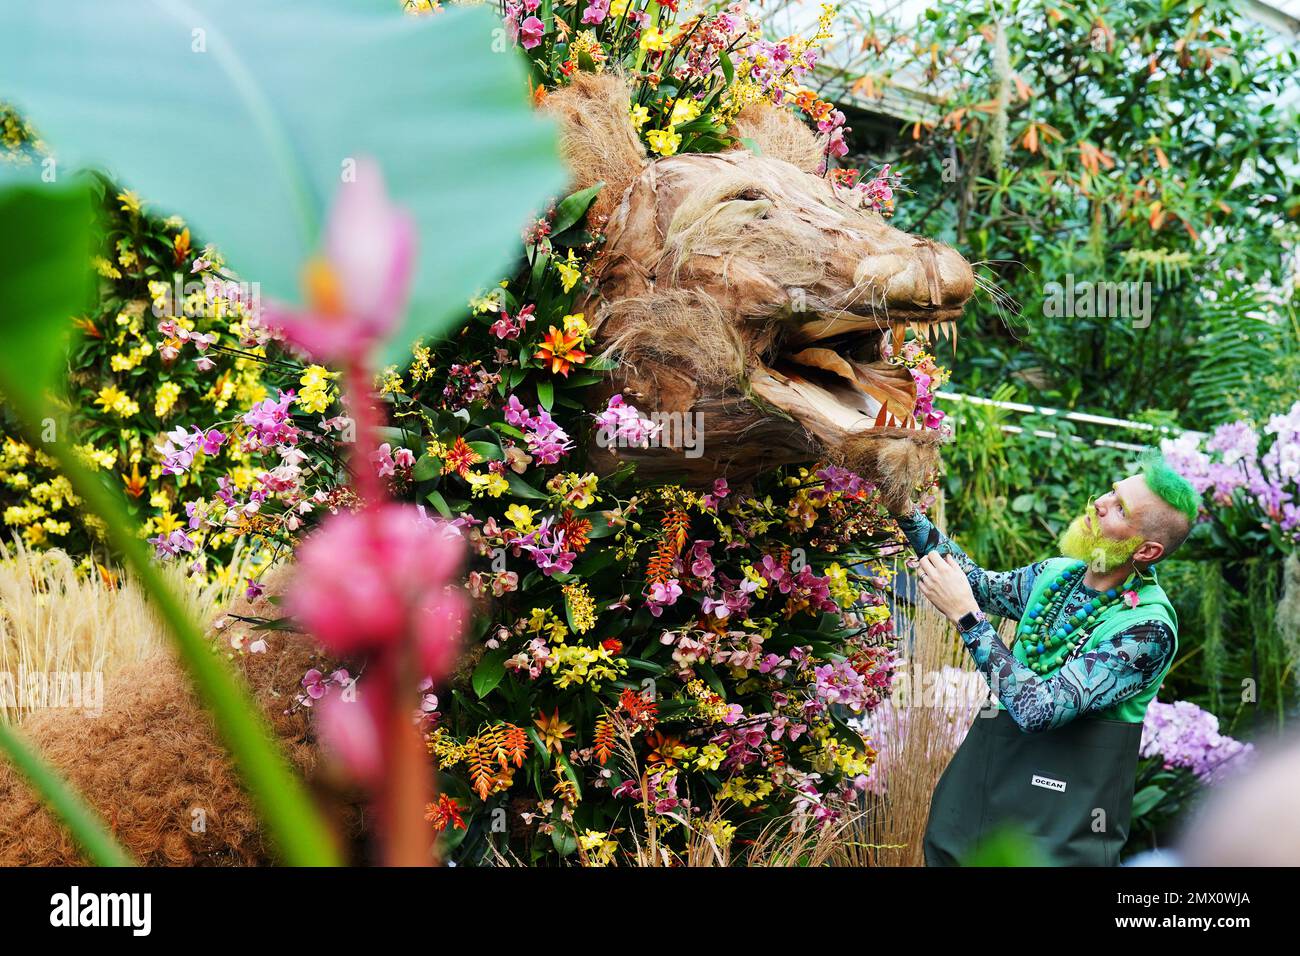 L'orticoltore Kew Henrick Röling partecipa a una mostra ispirata al leone al Festival delle orchidee a tema Camerun, all'interno del Conservatorio Princess of Wales presso i Royal Botanic Gardens di Kew, nella zona ovest di Londra. Data immagine: Giovedì 2 febbraio 2023. Foto Stock